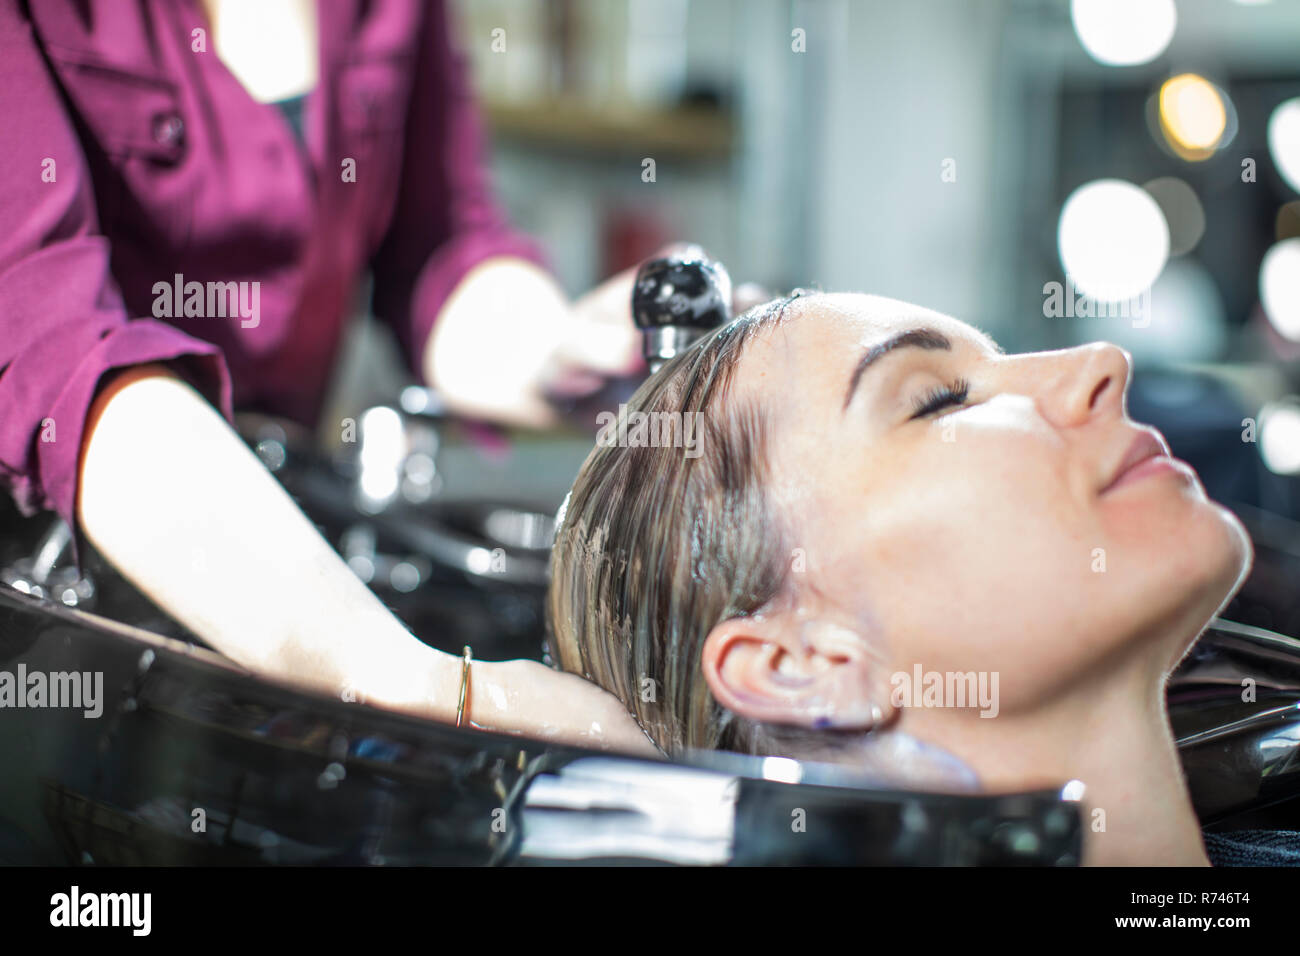 Hairdresser rinsing customer's hair in salon Stock Photo